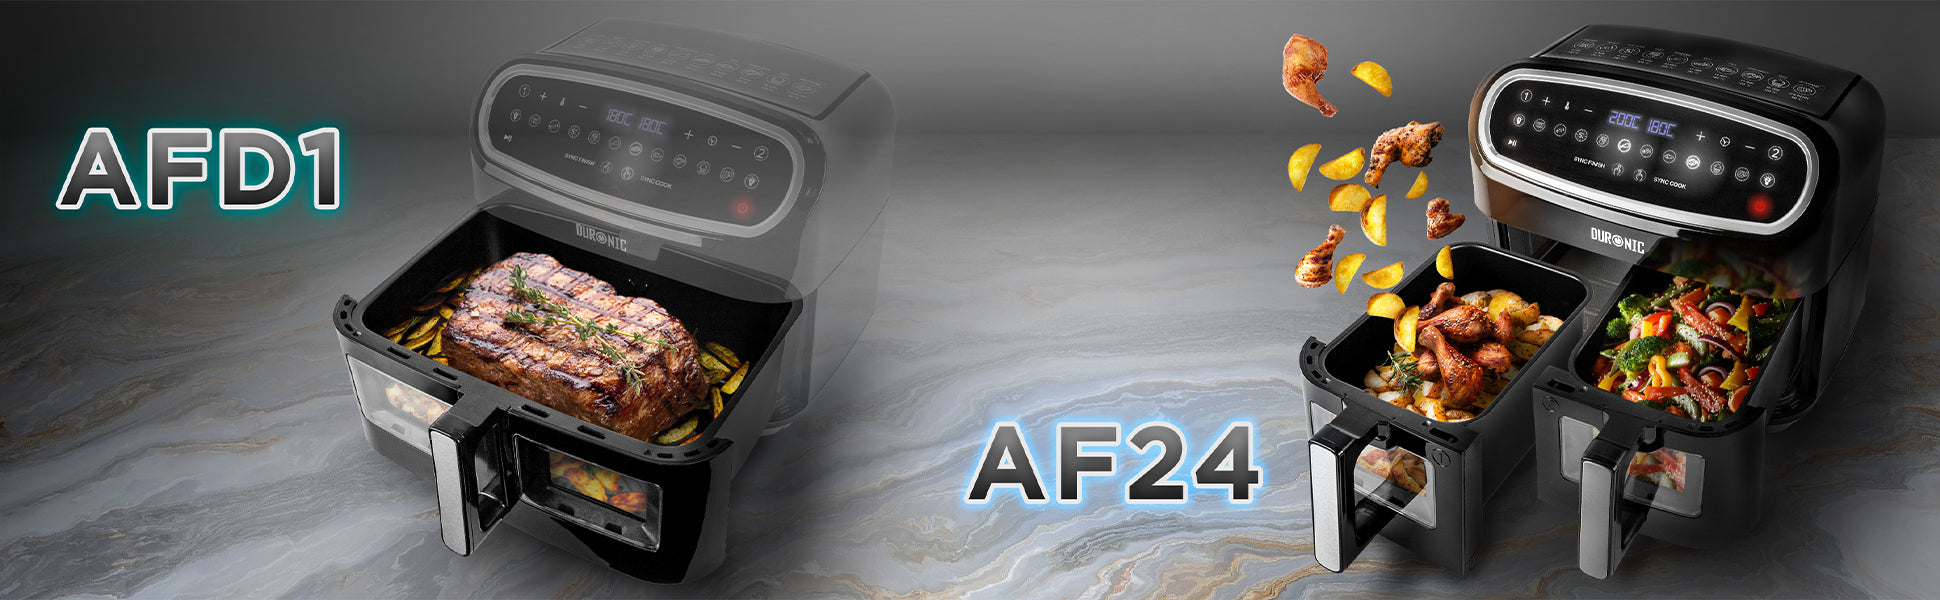 DURONIC AF24 Air Fryer User Guide